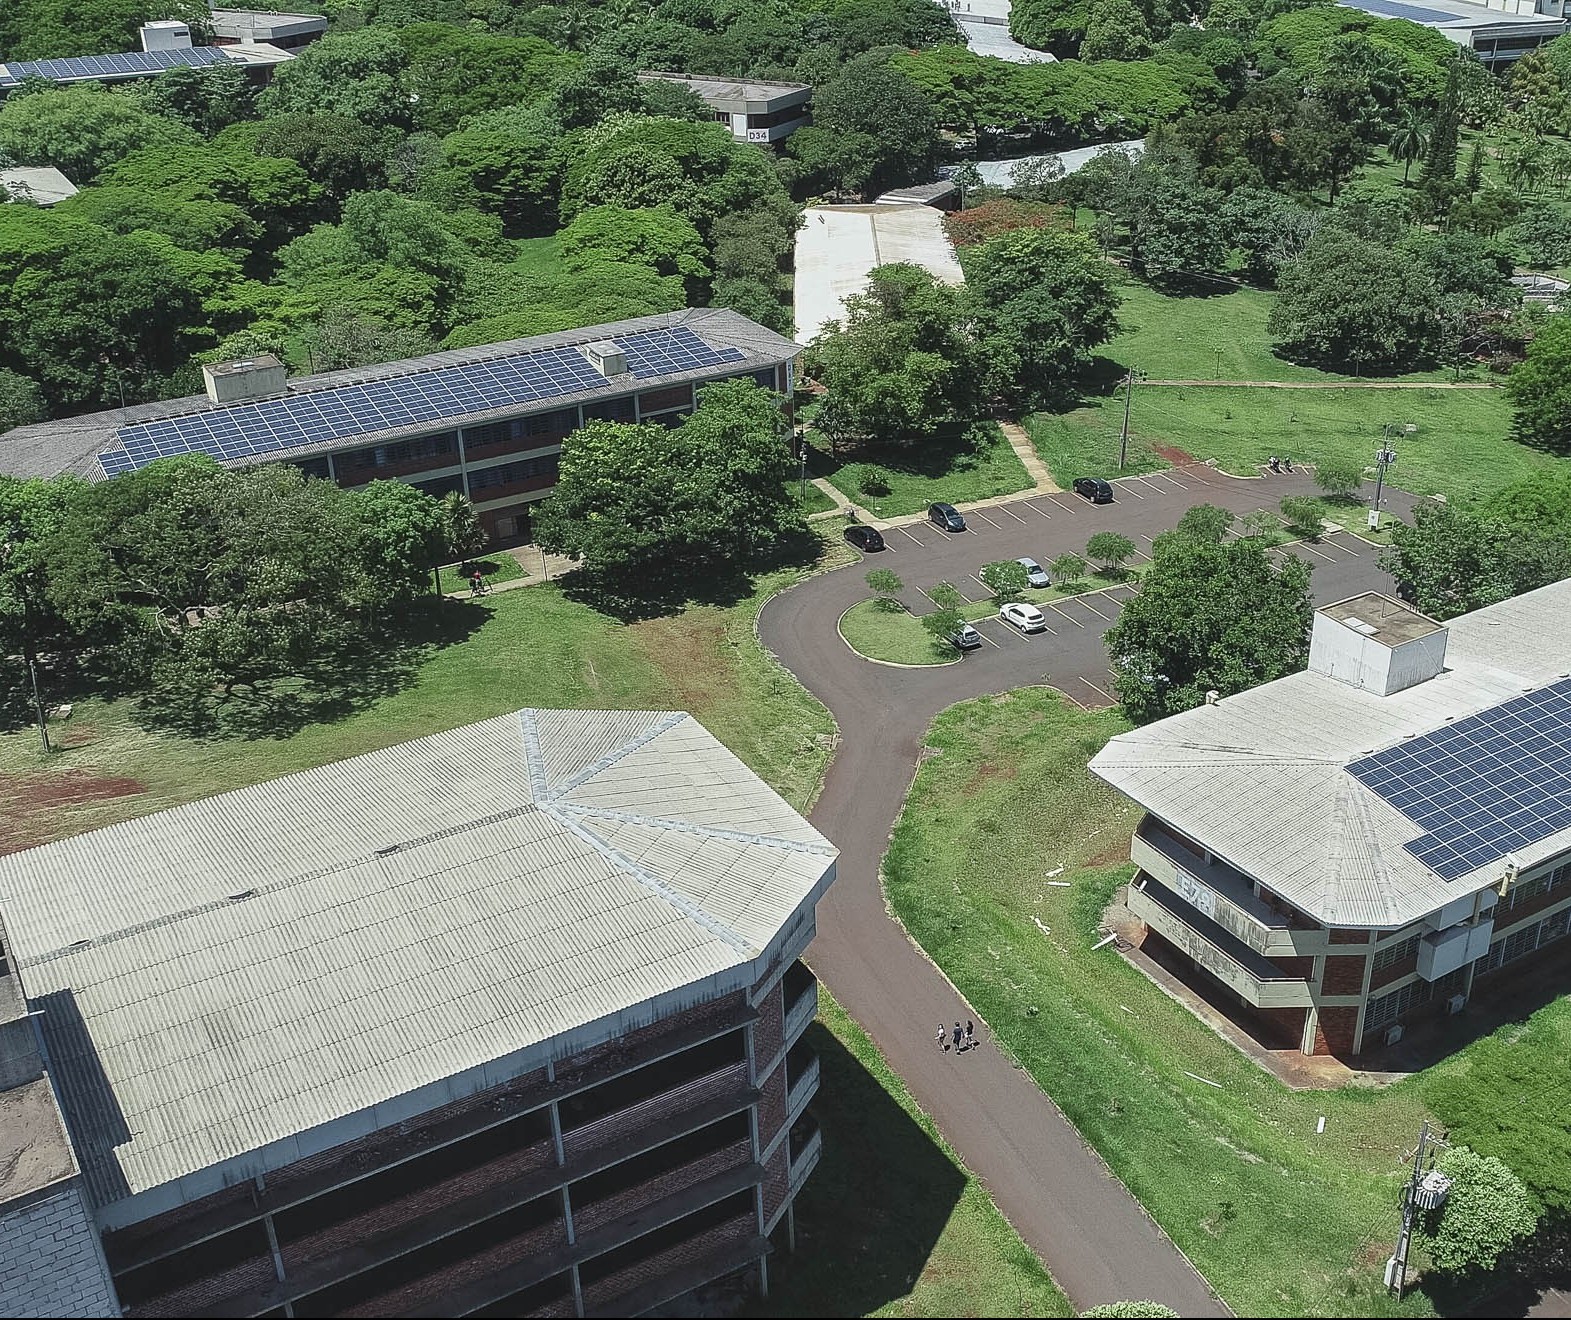 Painéis fotovoltaicos começam a gerar energia no campus da UEM